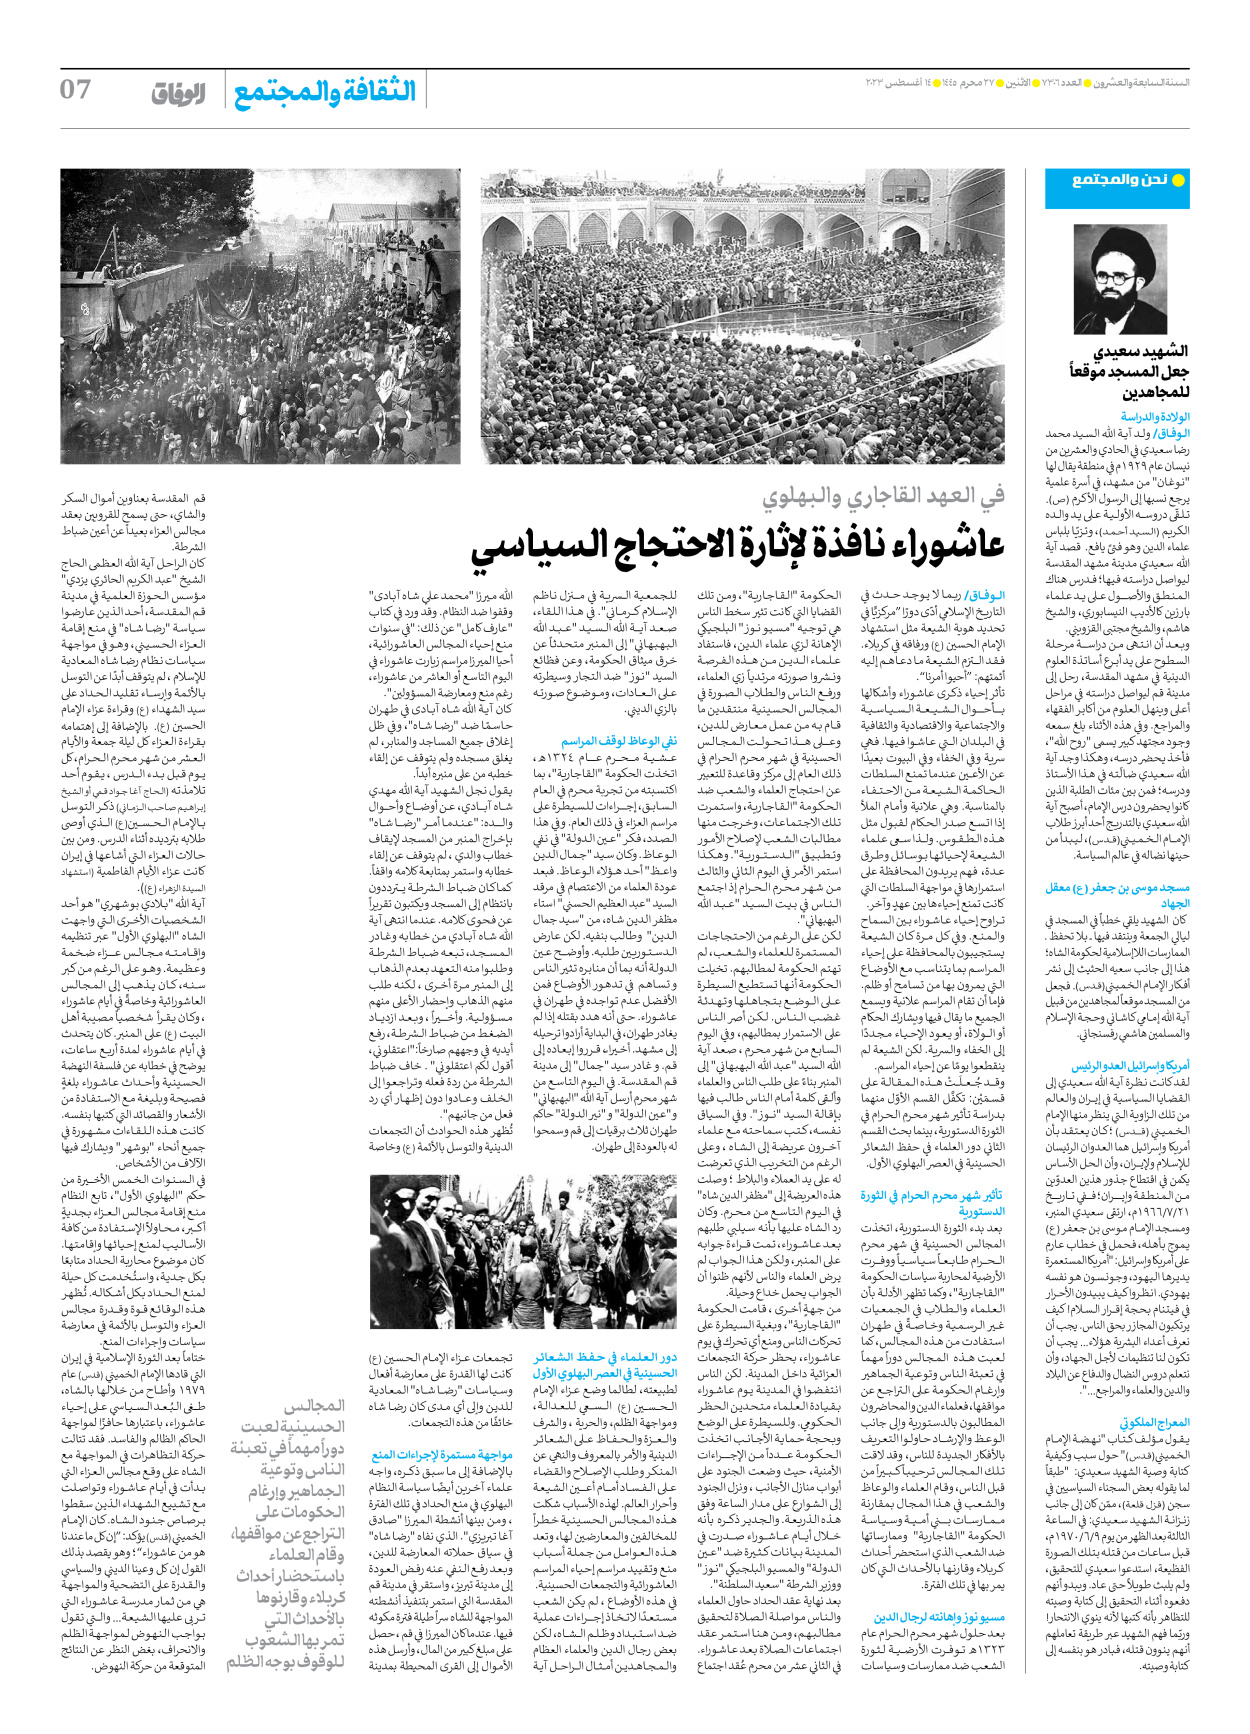 صحیفة ایران الدولیة الوفاق - العدد سبعة آلاف وثلاثمائة وستة - ١٤ أغسطس ٢٠٢٣ - الصفحة ۷